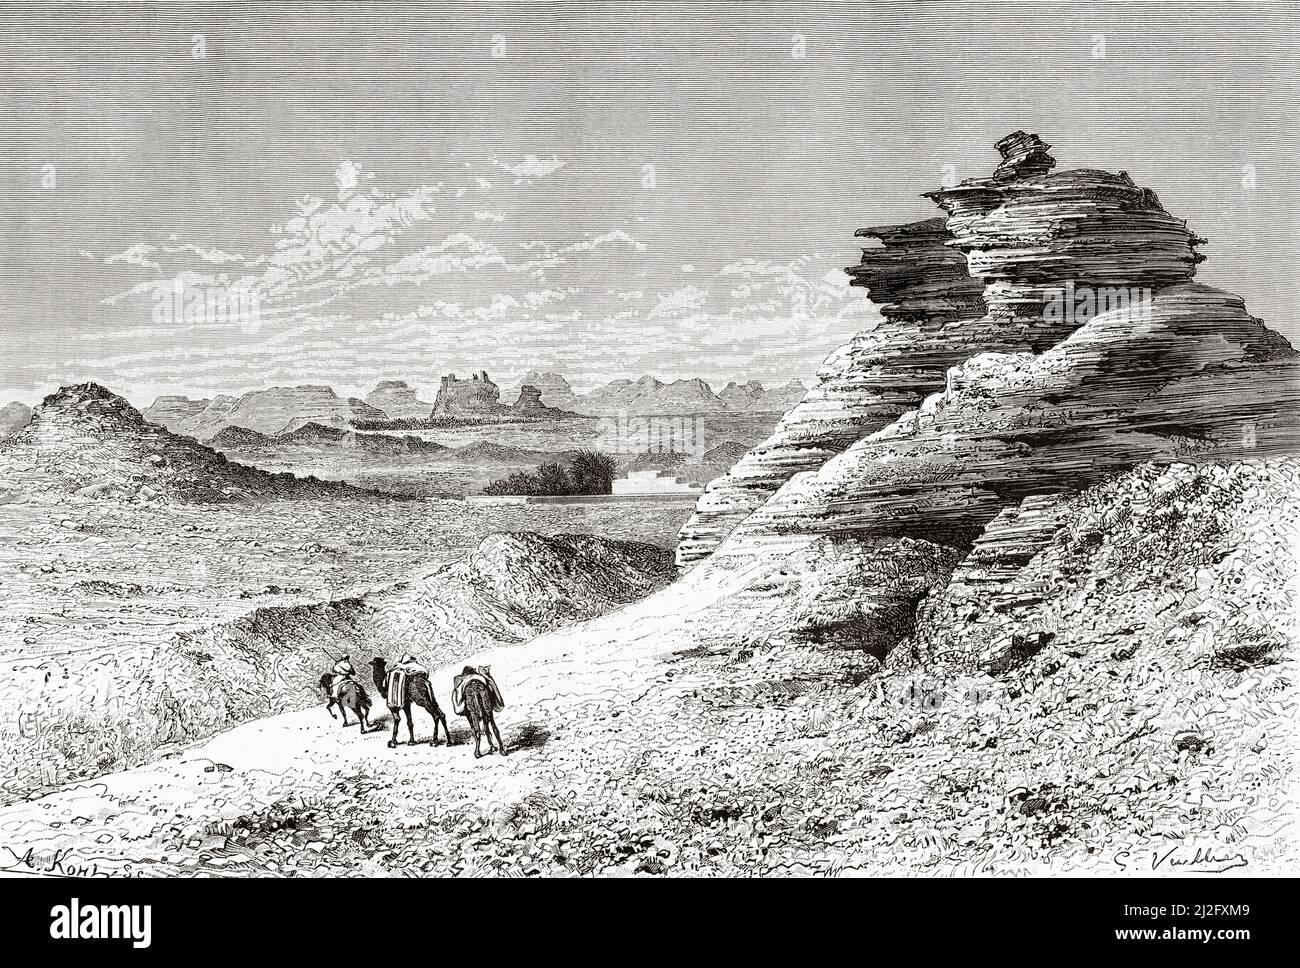 Montaña de arenisca cerca de Sakaka, Arabia Saudita. Peregrinación a Nedjed, cuna de la raza árabe por Lady Anna Blunt 1878-1879, Le Tour du Monde 1882 Foto de stock